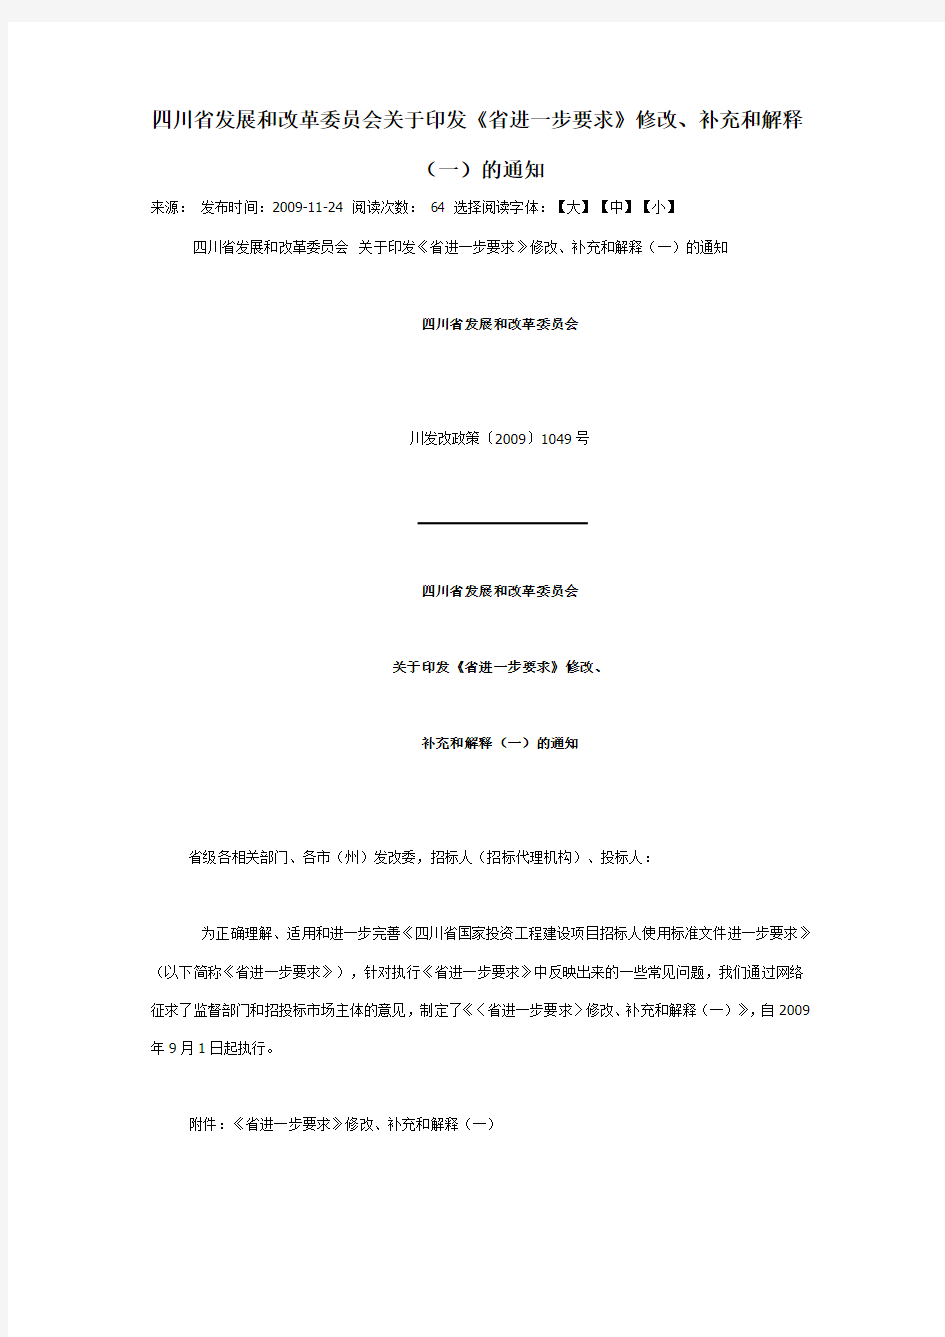 四川省发展和改革委员会关于印发《省进一步要求》修改、补充和解释(一)的通知